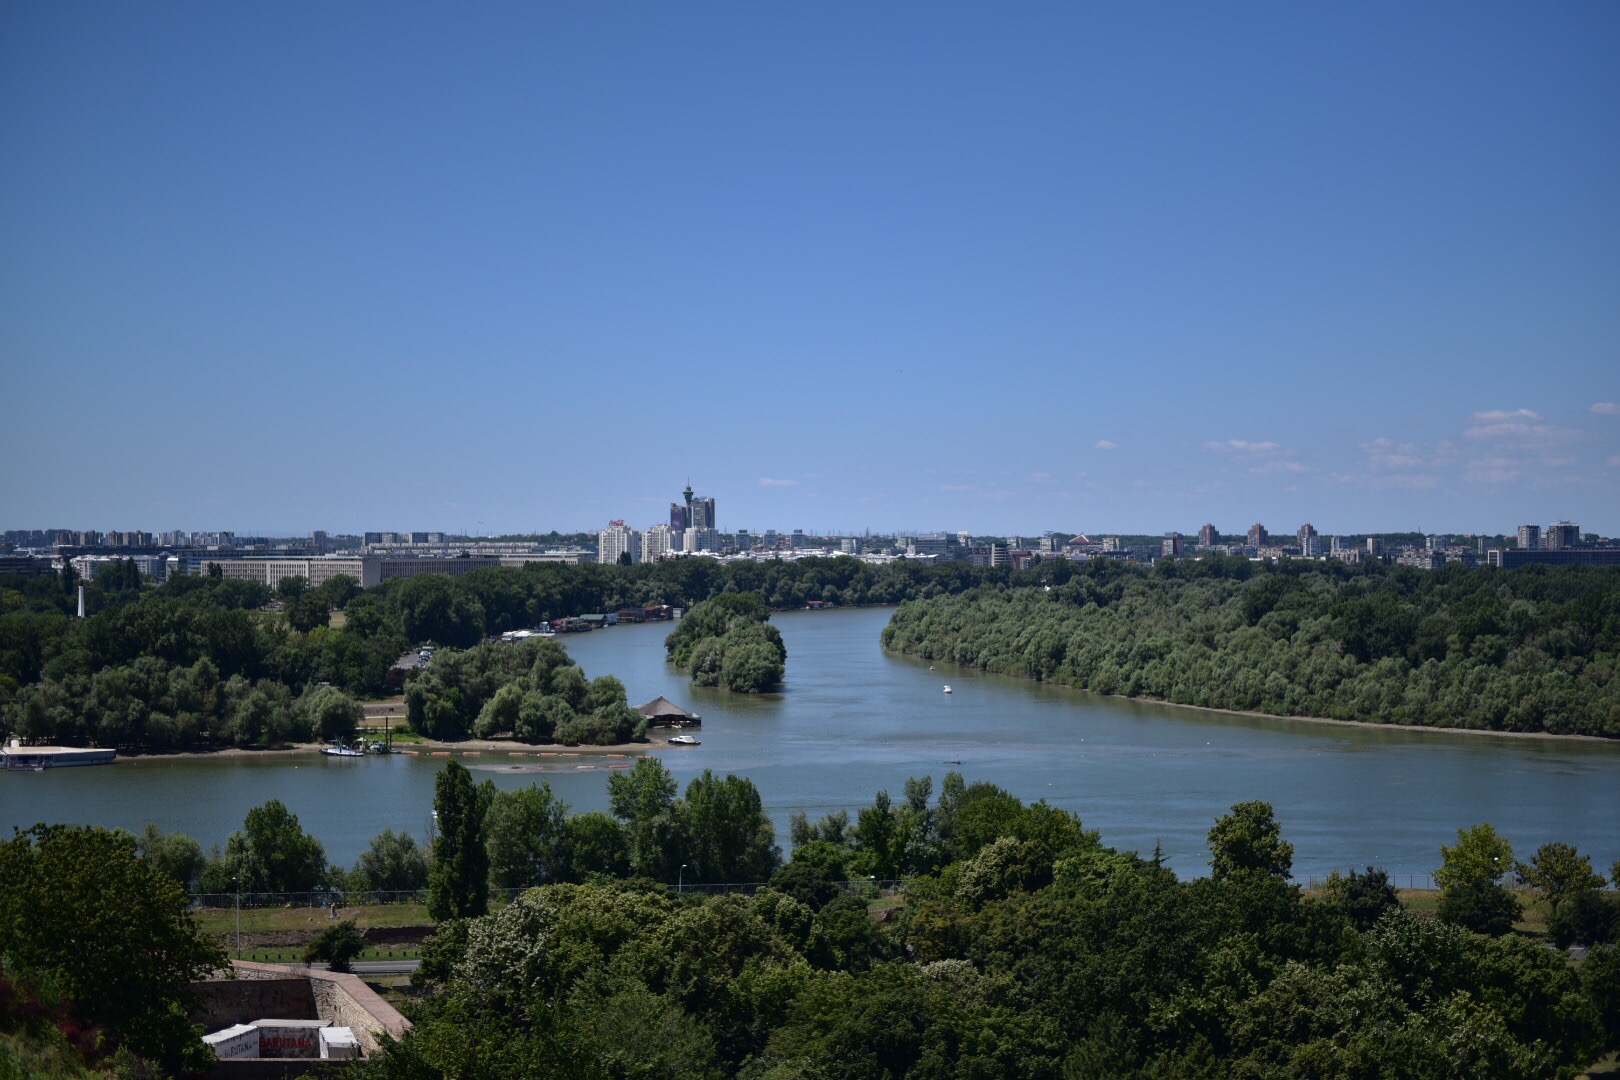 Brelgrade Sava and Danube River junction